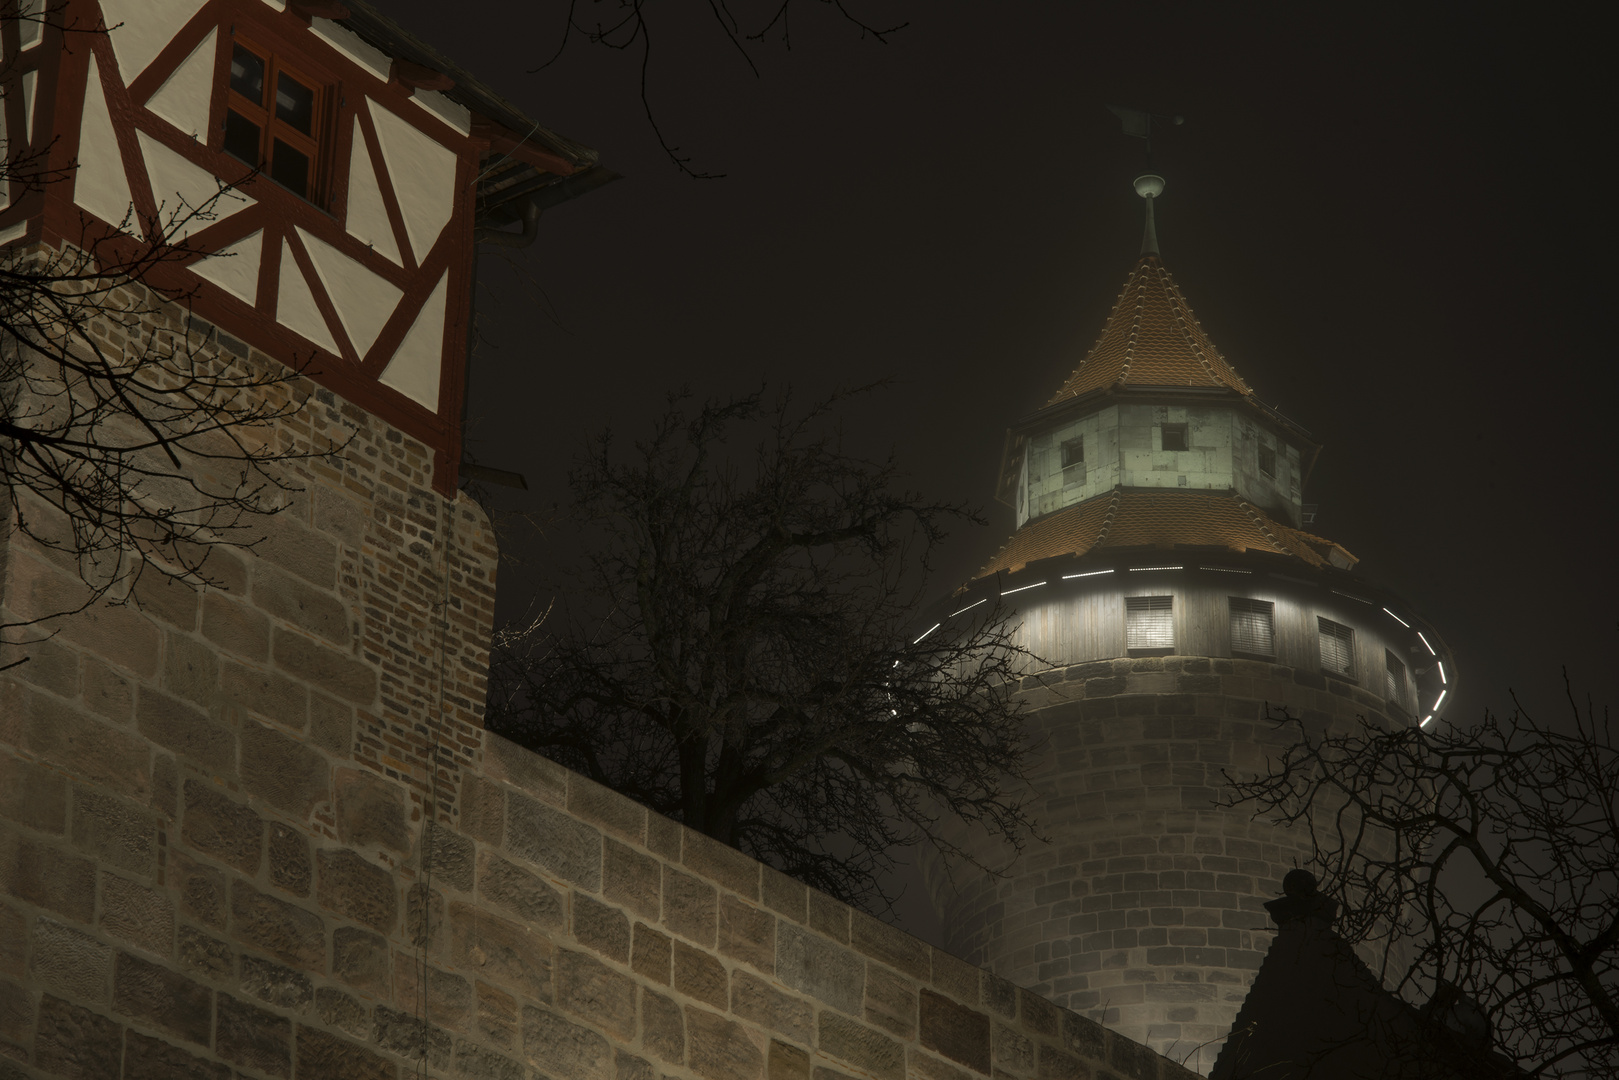 Der Sinwellturm der Nürnberger Kaiserburg...